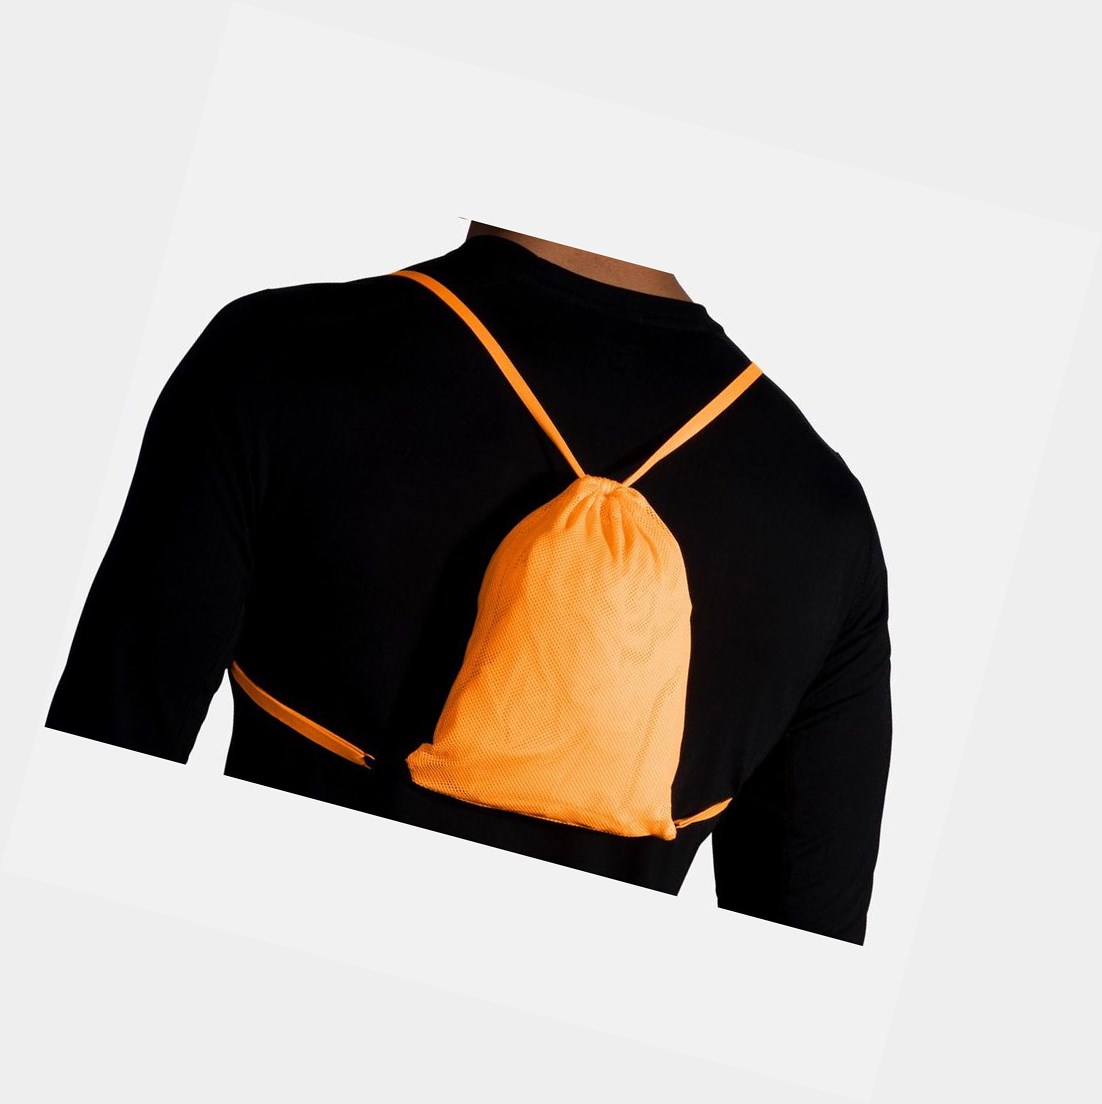 Brooks Canopy Men's Outerwear Fluoro Orange | VXZL-19657